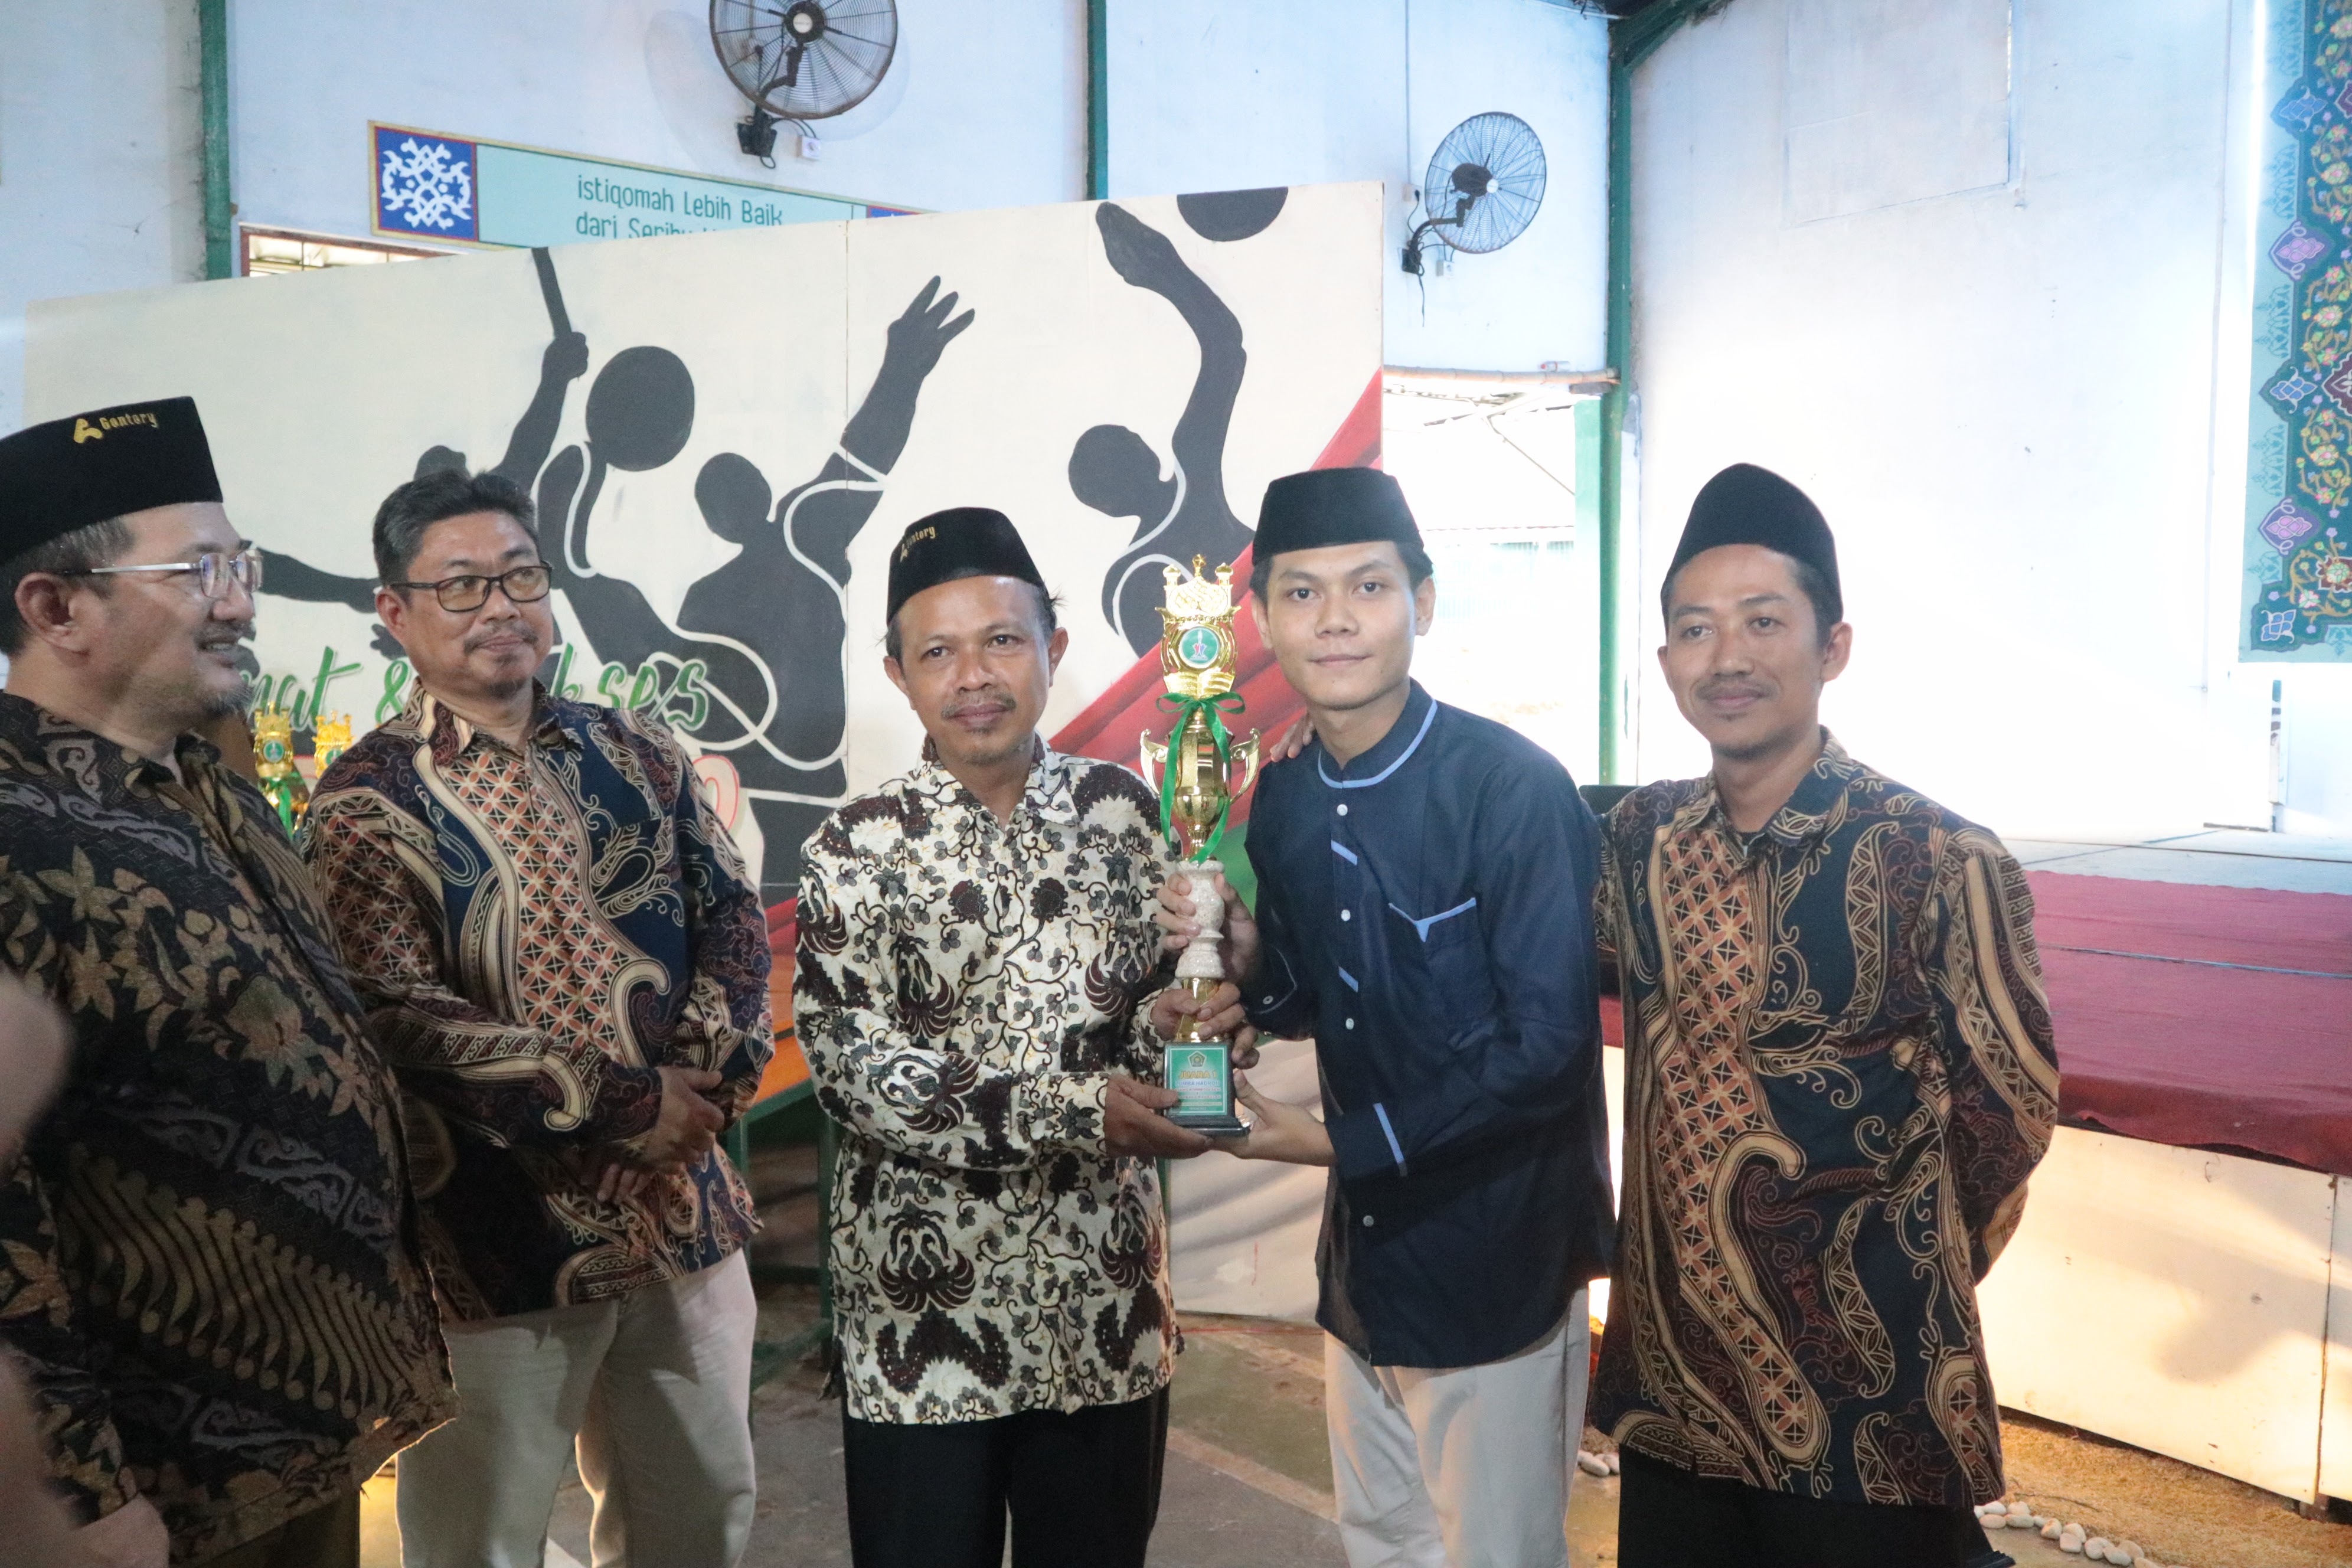 Raih Gelar Juara Aksioma, Santri Asshiddiqiyah harumkan nama Pesantren ditingkat Kota Tangerang Selatan